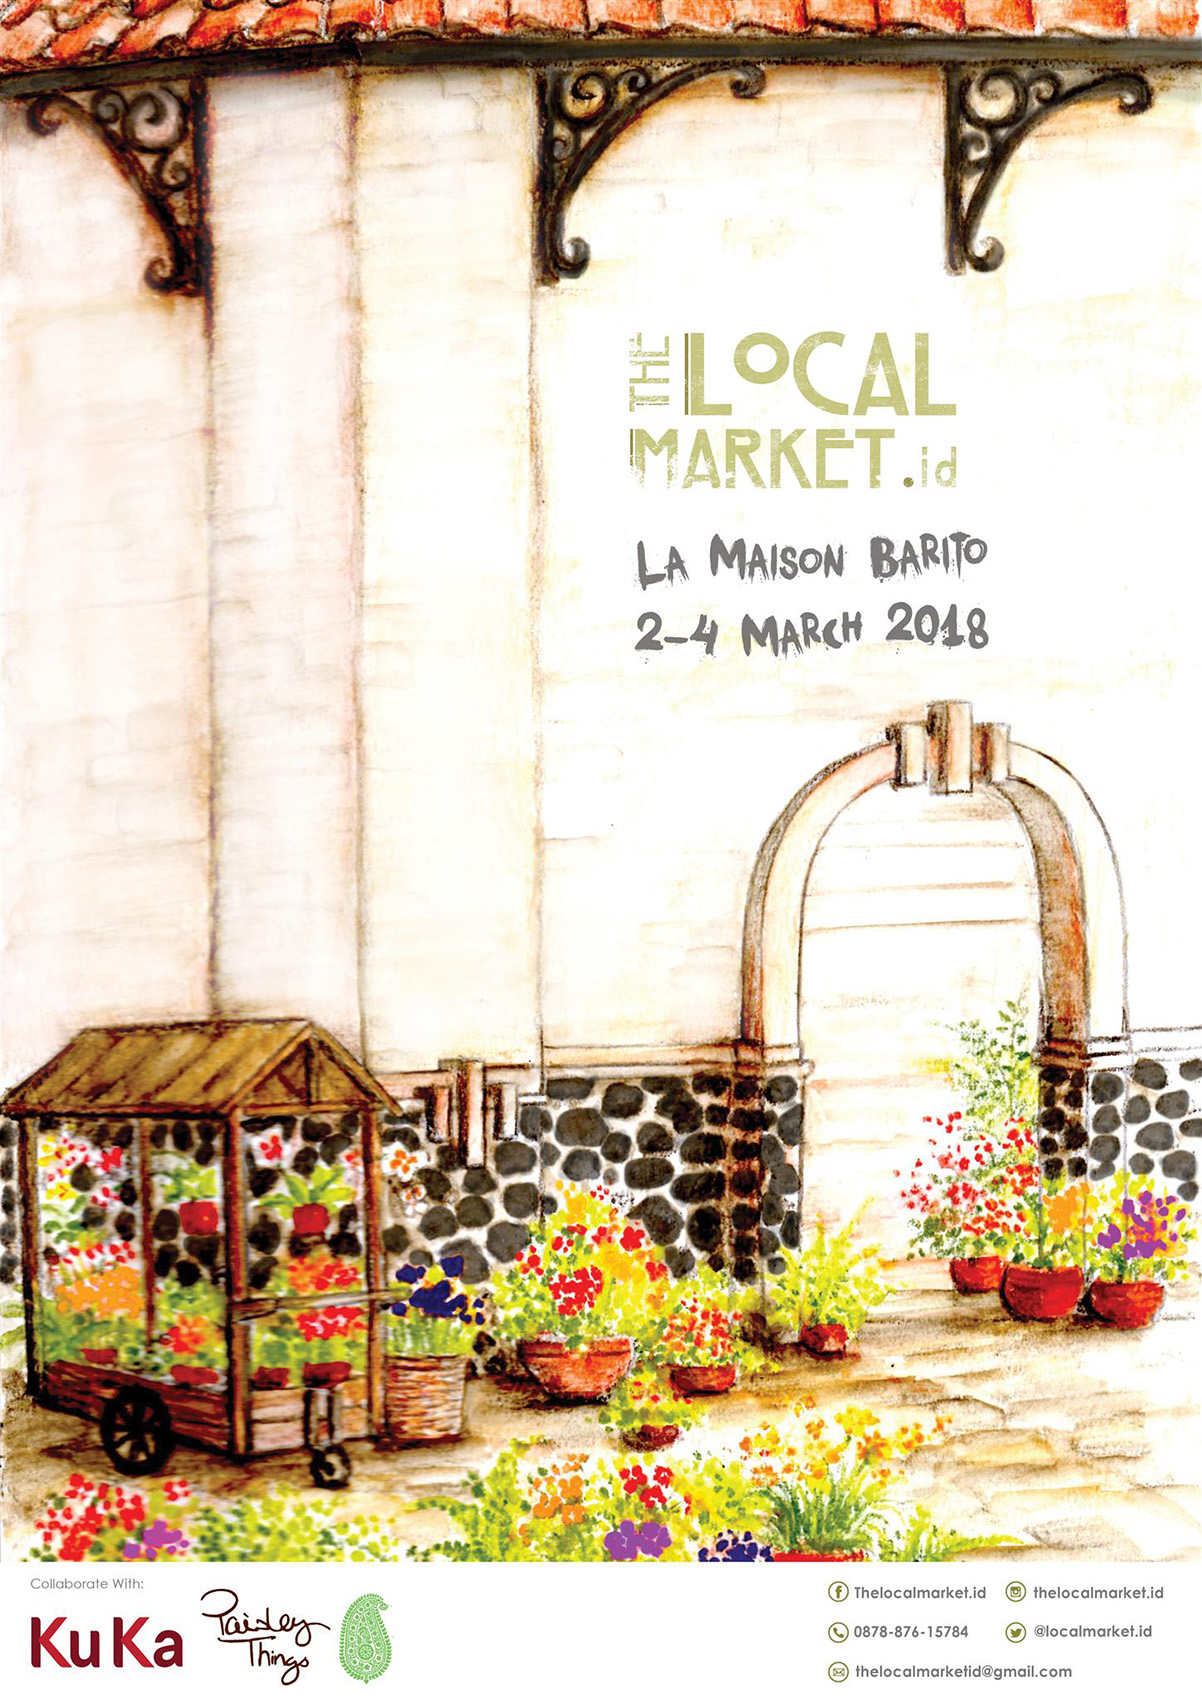 The Local Market @ La Maison Barito